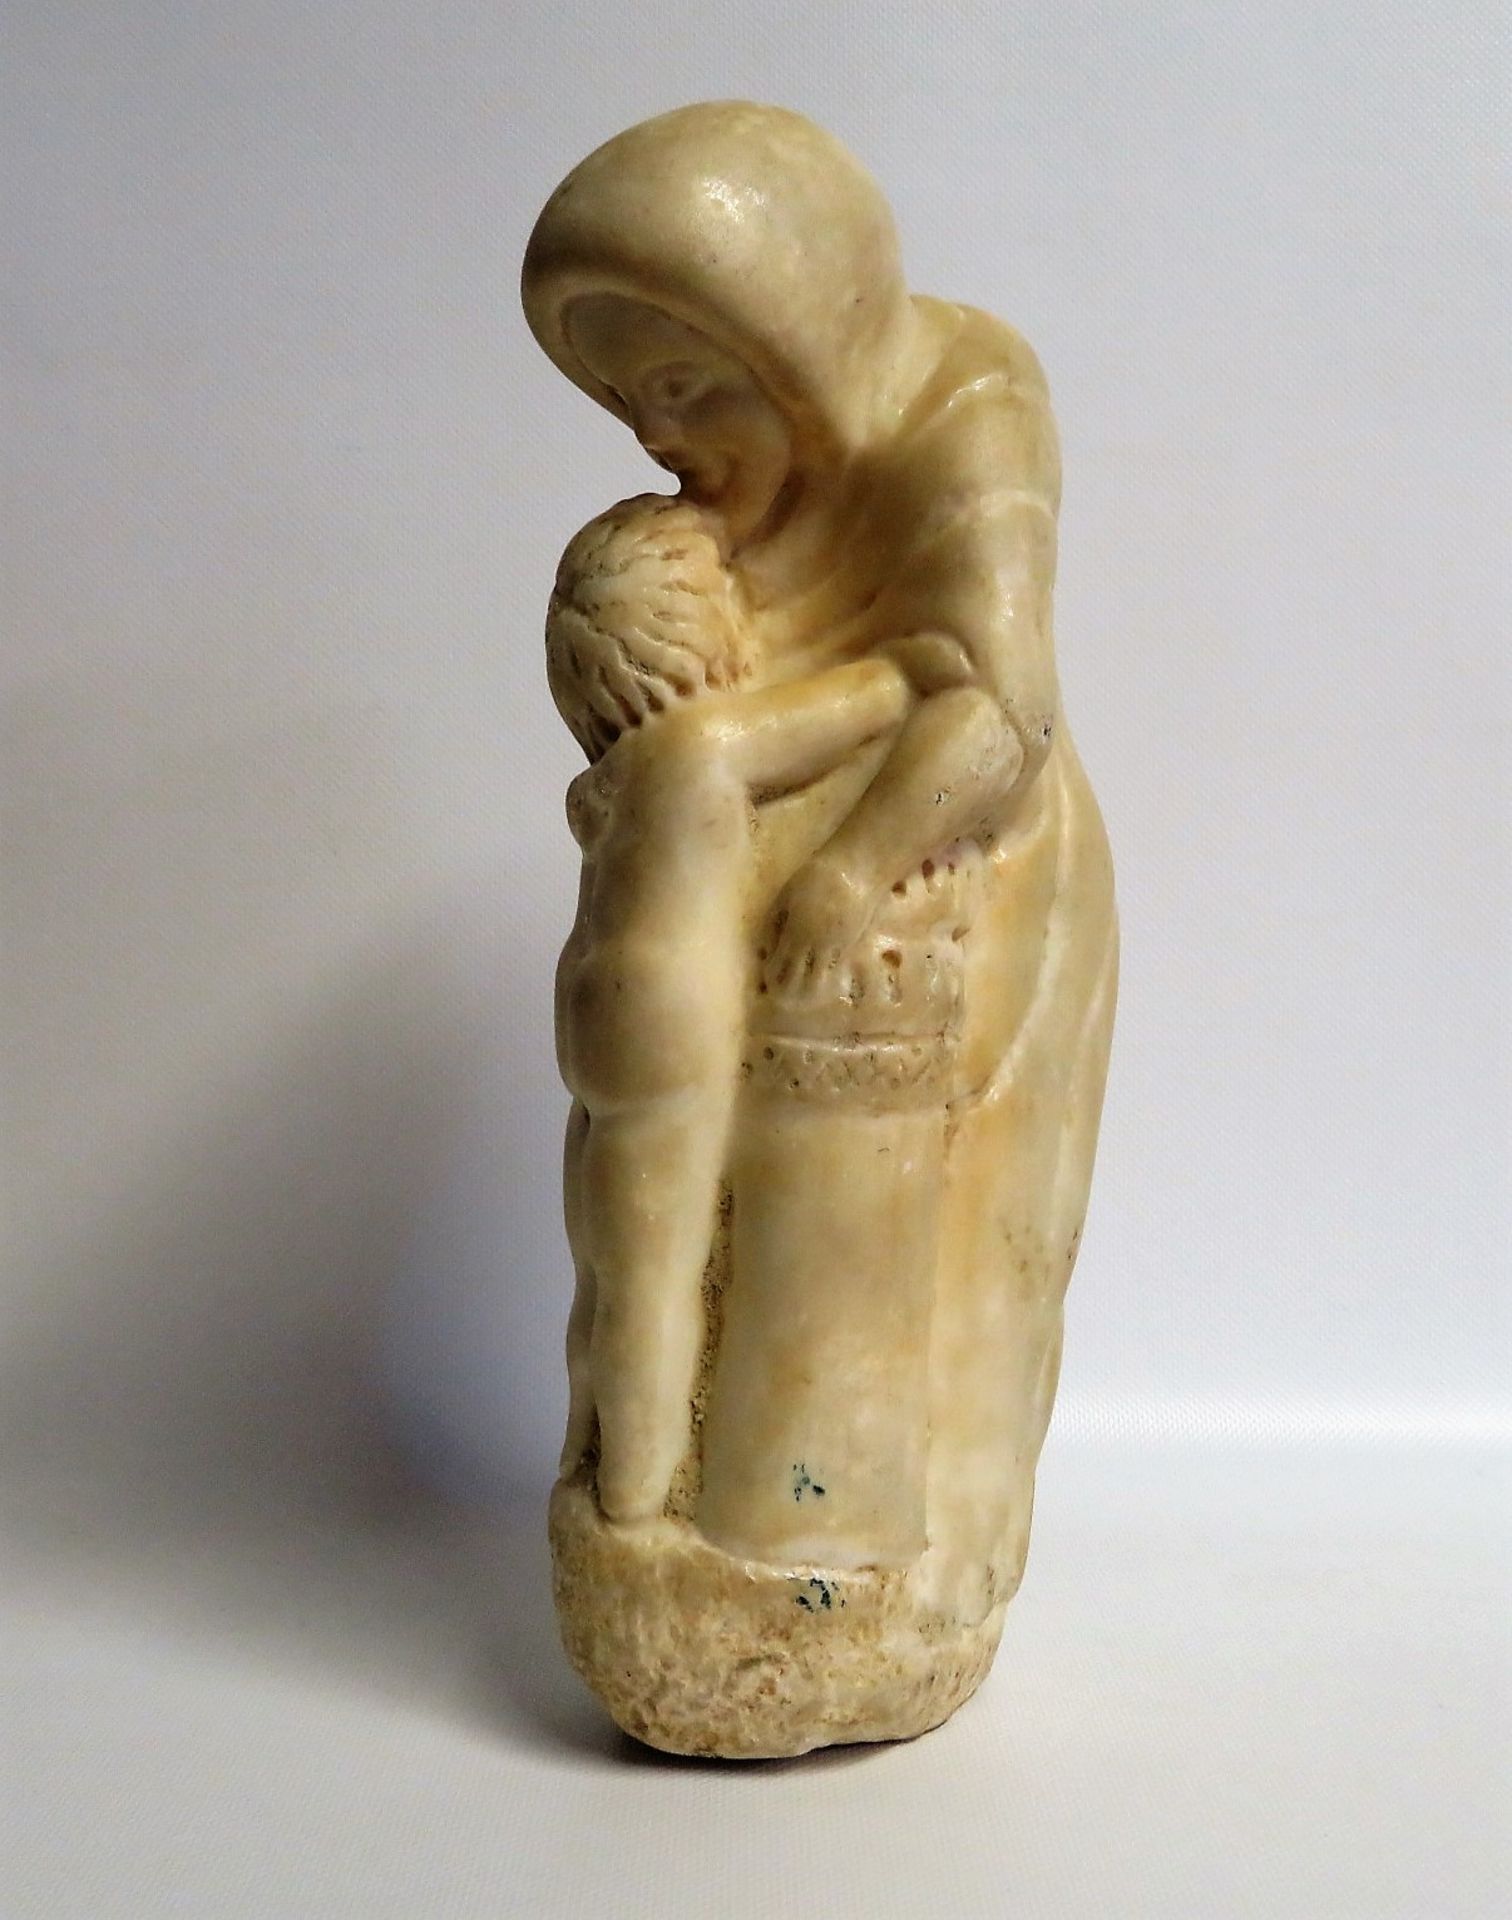 Unbekannt, Mutter mit Kind, 1. Hälfte 20. Jahrhundert, weißer Marmor, 33 x 7 x 15 cm. - Image 2 of 2